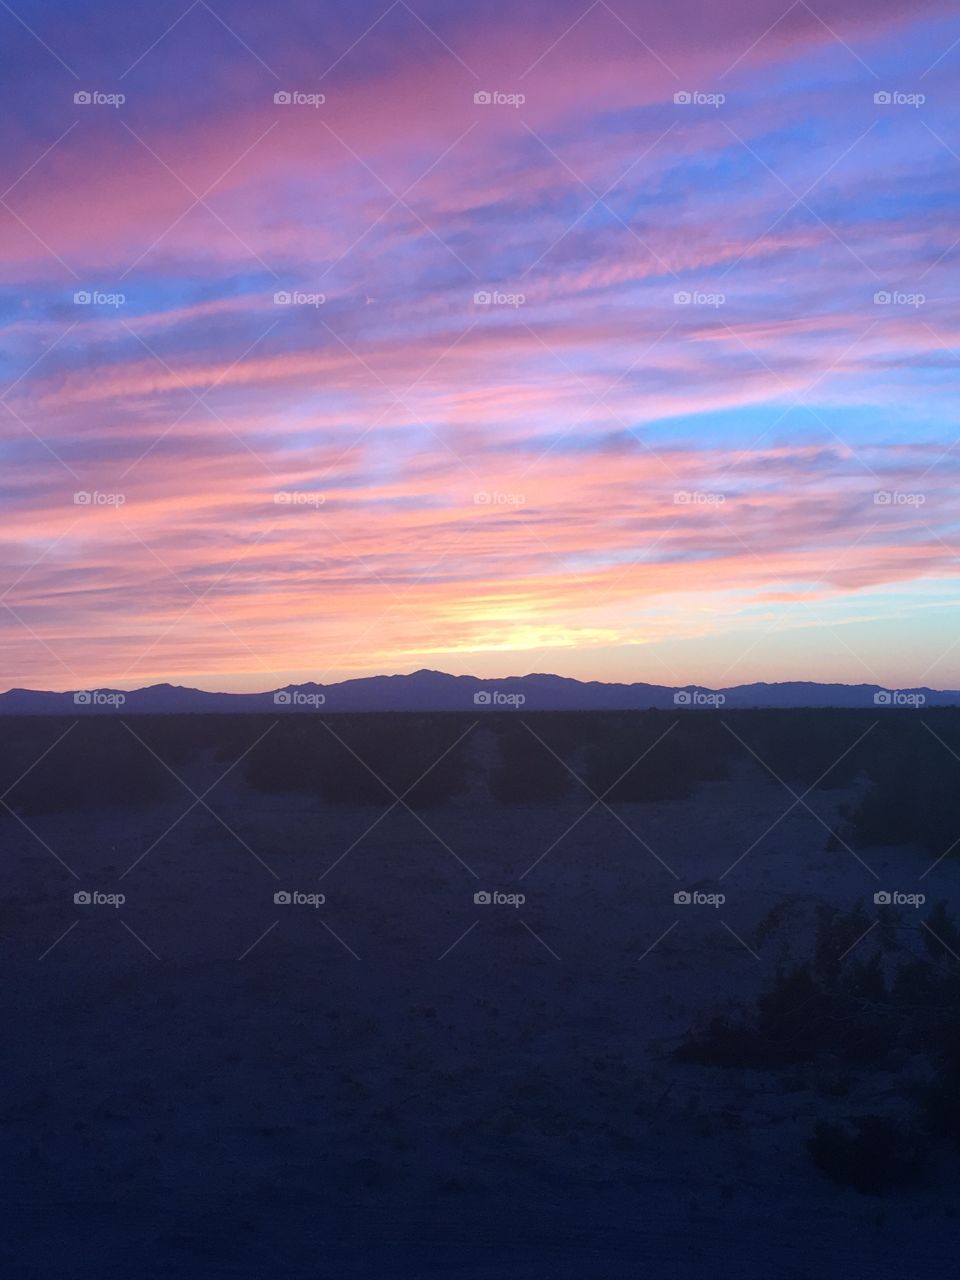 California desert sunset 